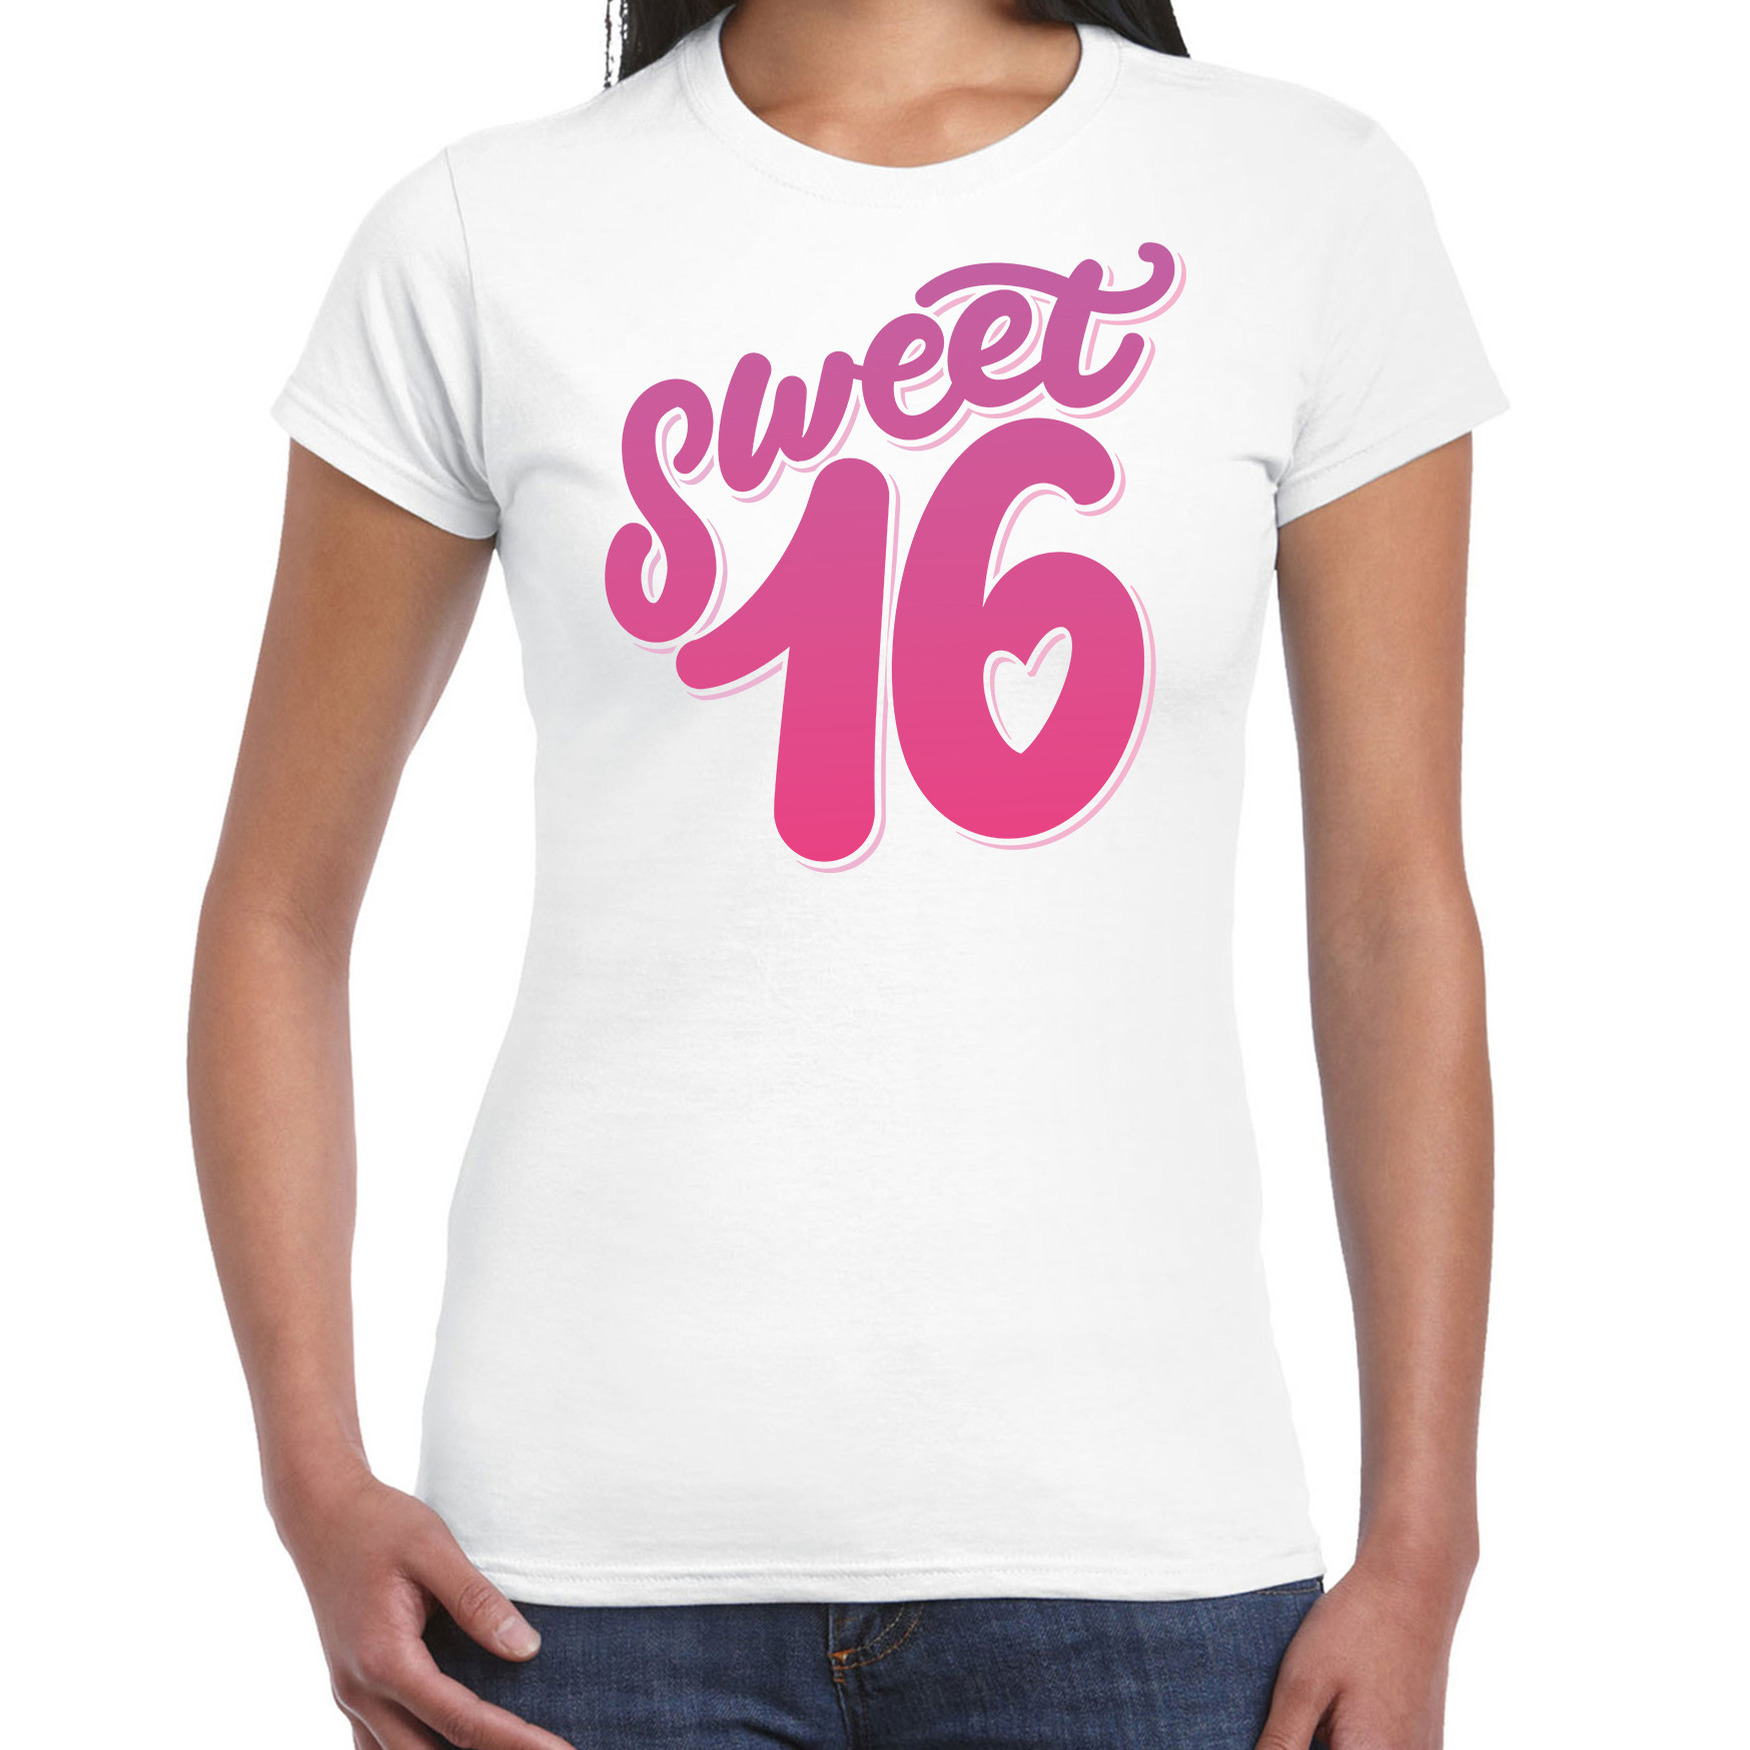 Sweet 16 verjaardag cadeau t-shirt wit dames